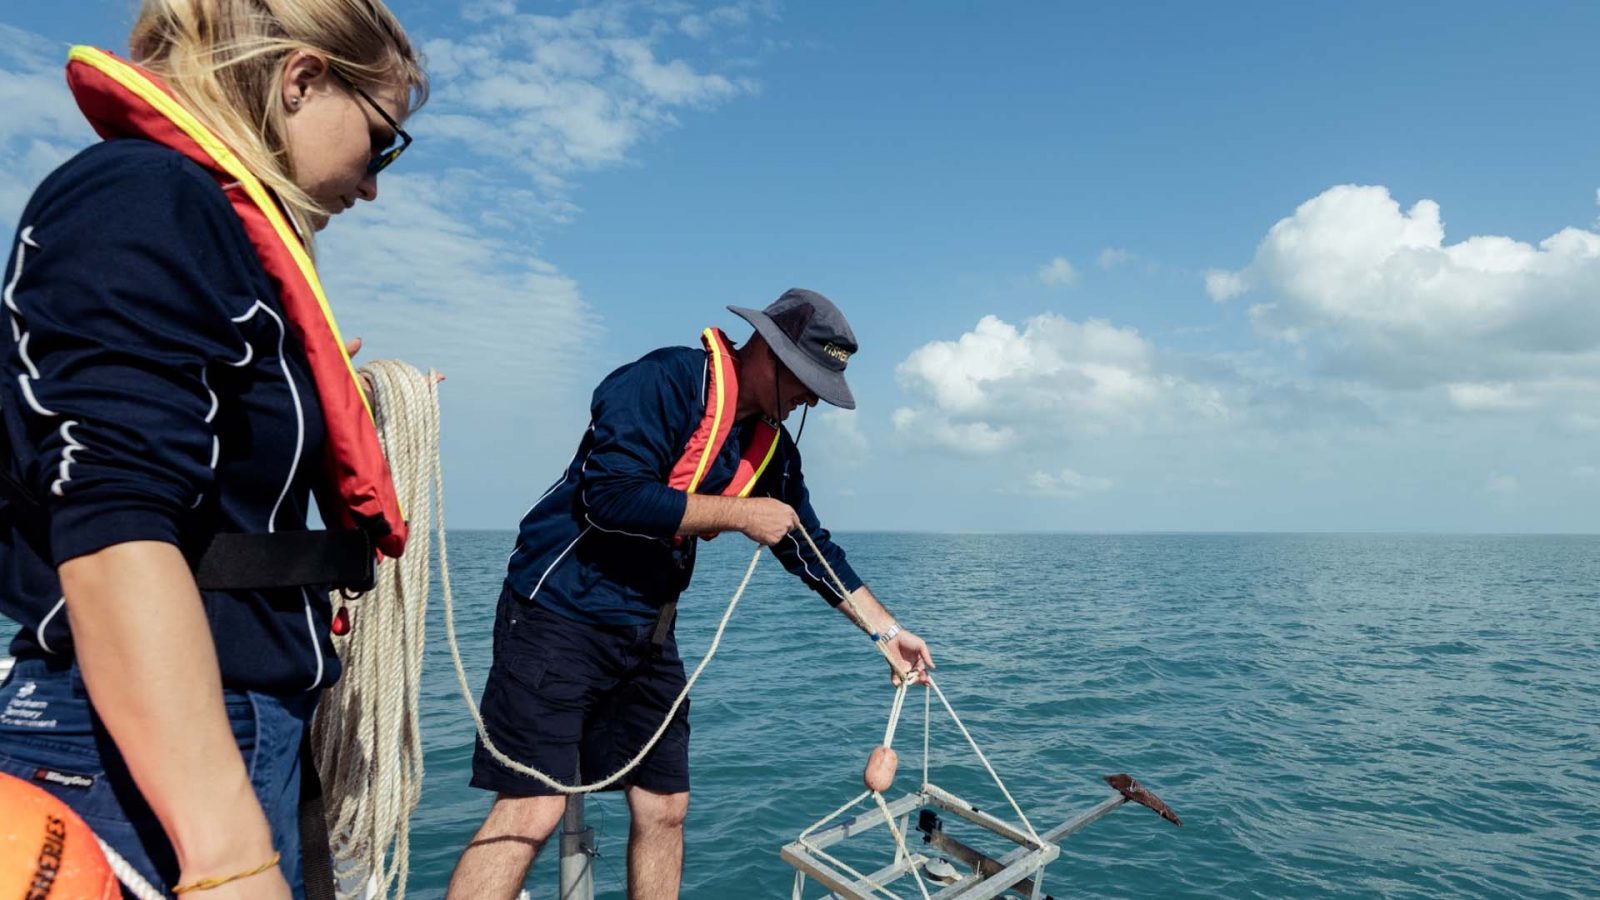 Шейн Пенни, исследователь промысловых рыб, со своей командой практикует подводную съемку с приманкой.